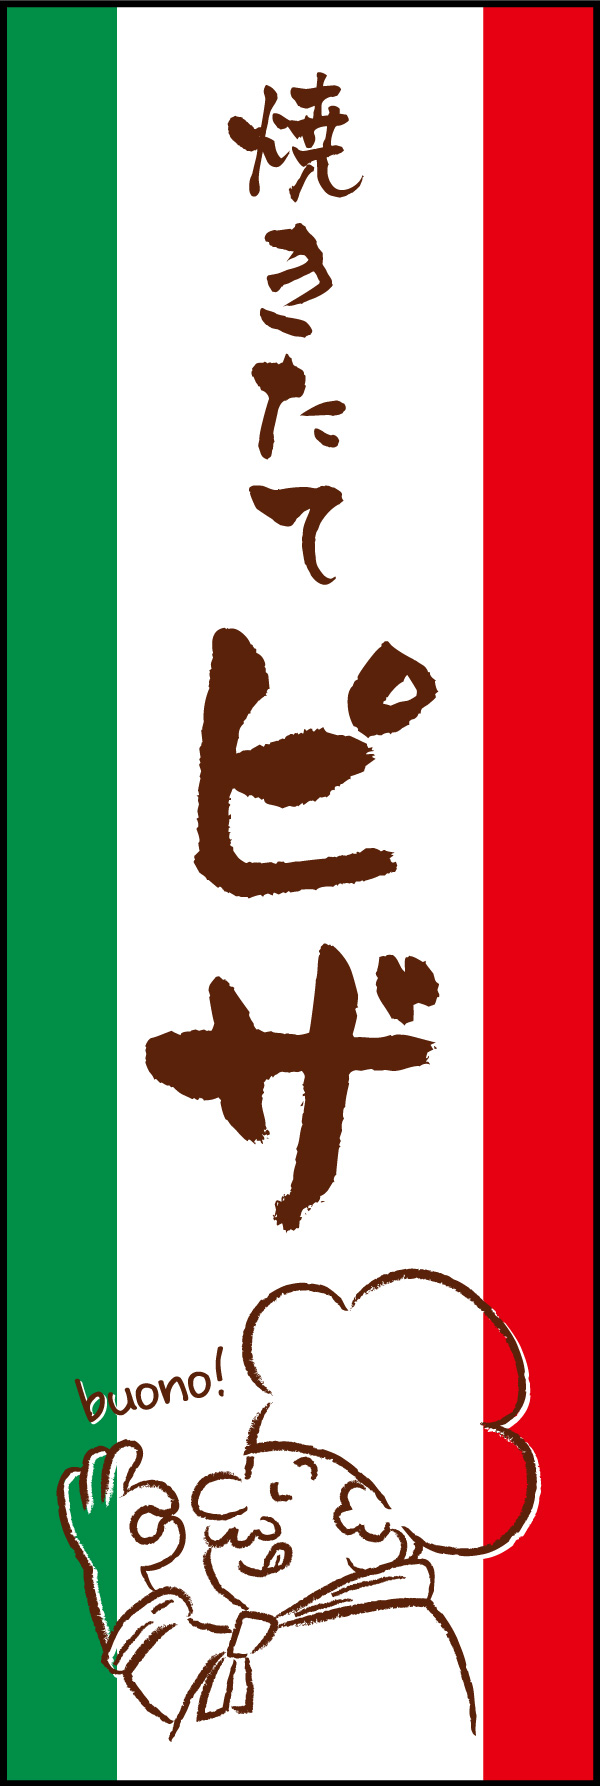 焼きたてピザ 02 「焼きたてピザ」の幟です。イタリア国旗をイメージした配色に、ラフな文字とイラストで本格的なピザ屋を演出しました。(Y.M)